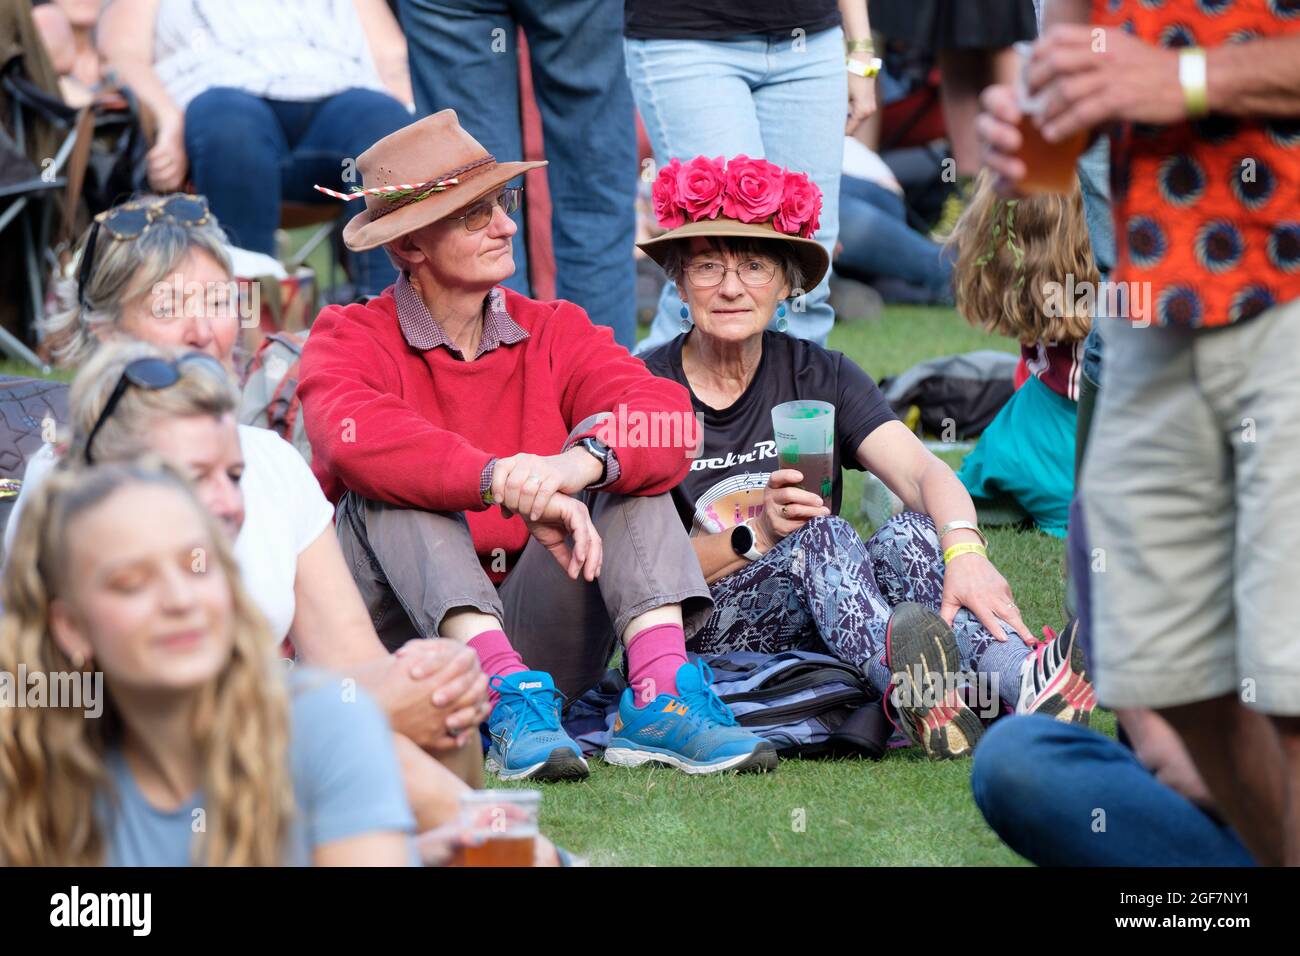 Fans enjoying the return of live music at Weyfest Music Festival, Farnham, UK. August 22, 2021 Stock Photo